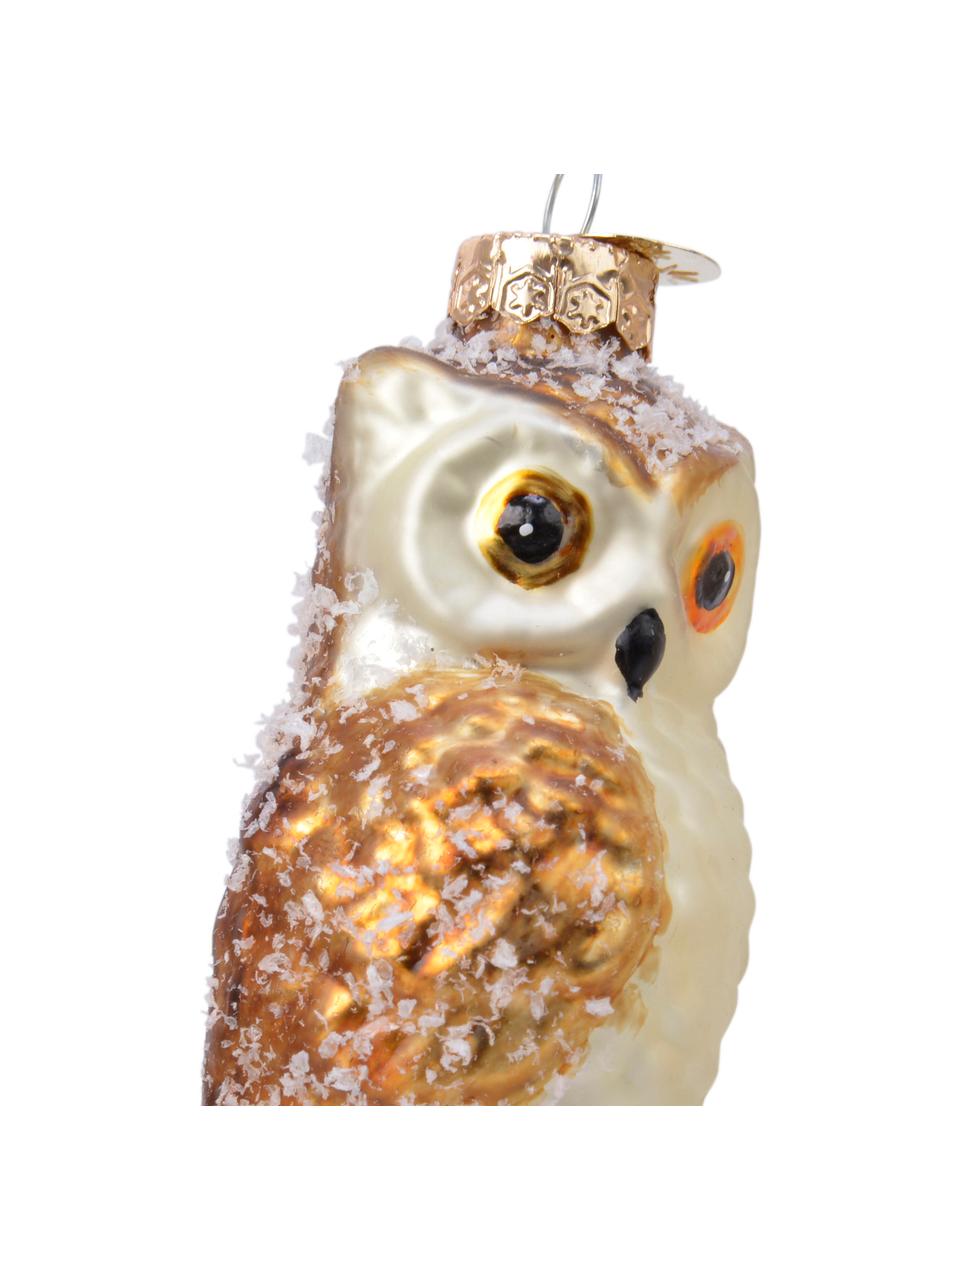 Ozdoby na stromček Owls, 3 ks, Béžová, odtiene zlatej, biela, Ø 4 x V 9 cm